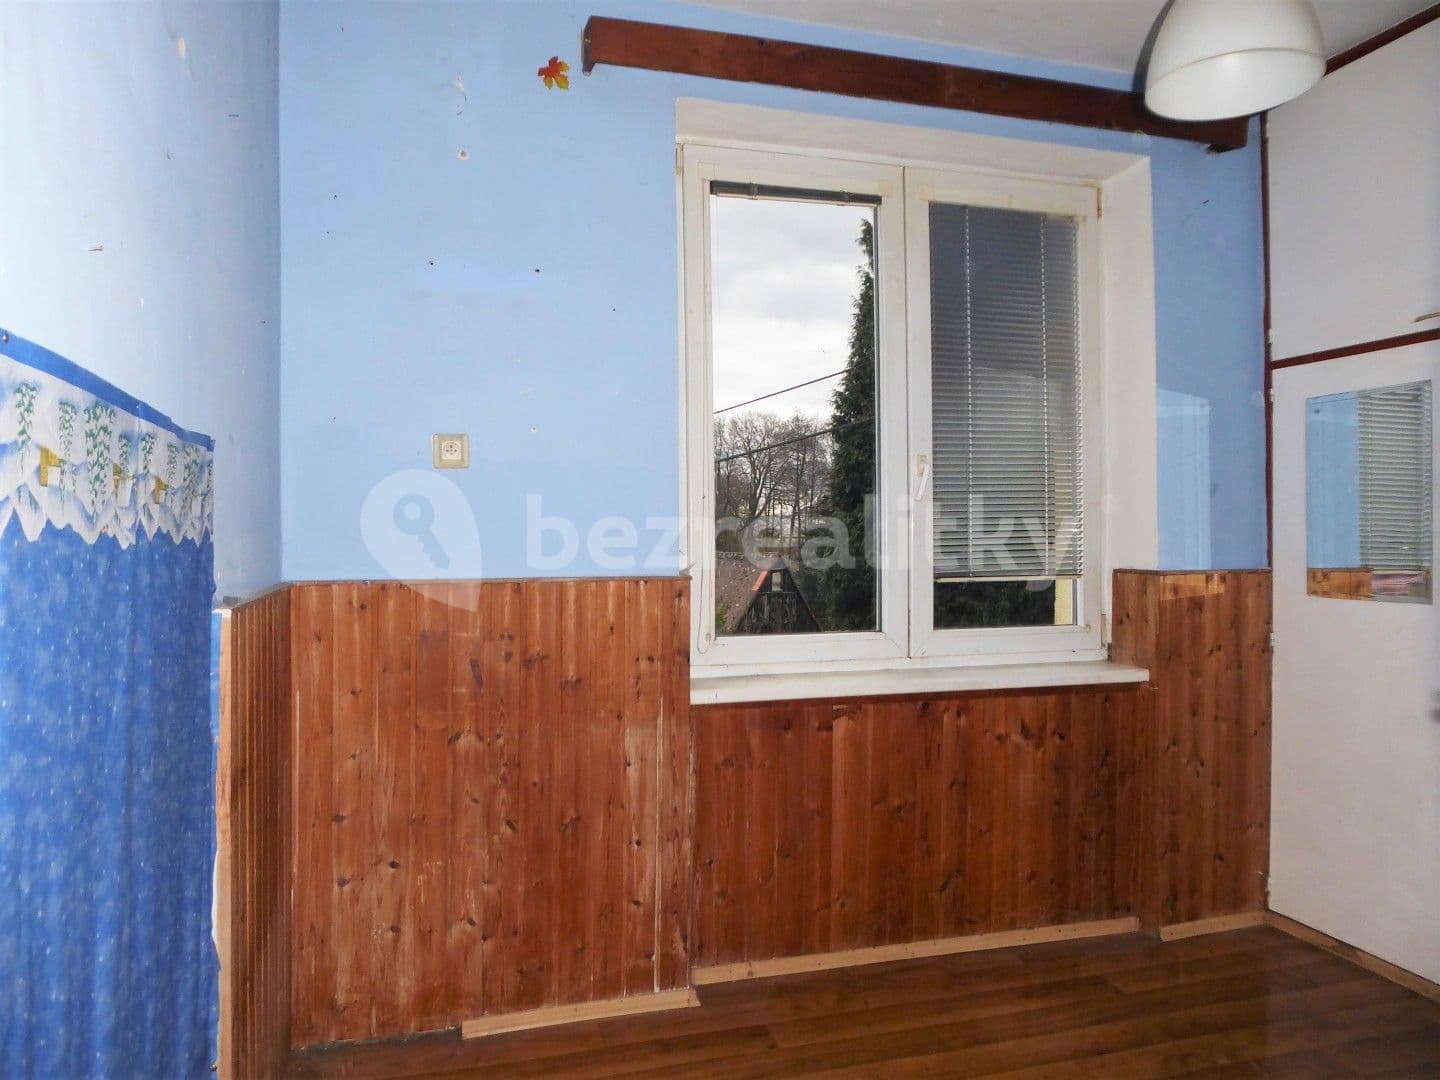 3 bedroom flat for sale, 64 m², Chodov, Karlovarský Region